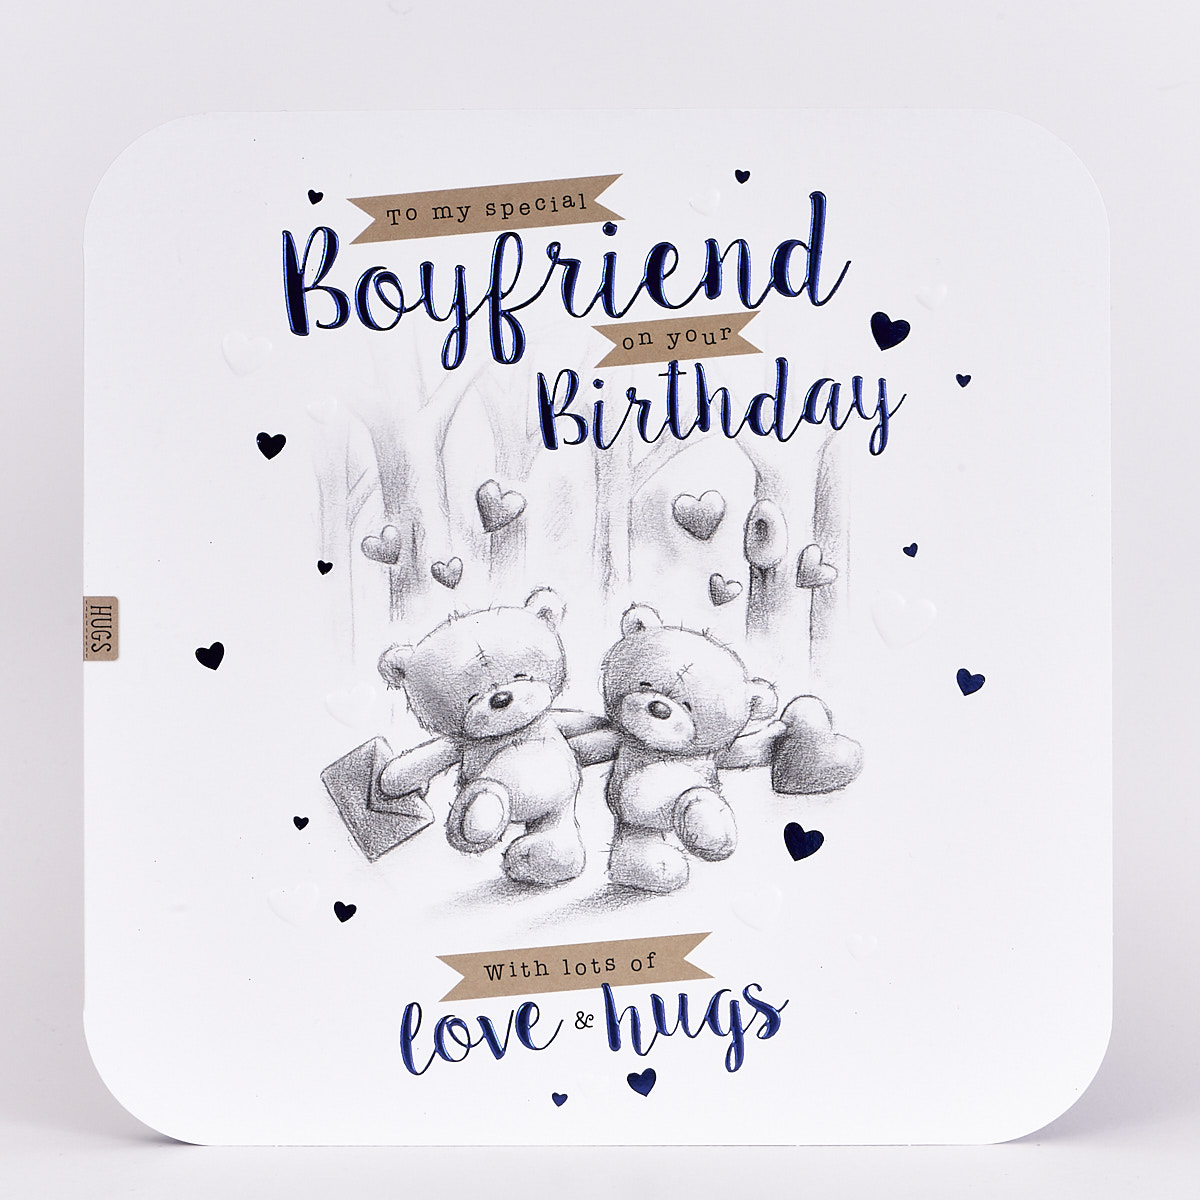 Cute Birthday Card Ideas For Your Boyfriend Birthday Card For Boyfriend Personalised Funny Cute Happy